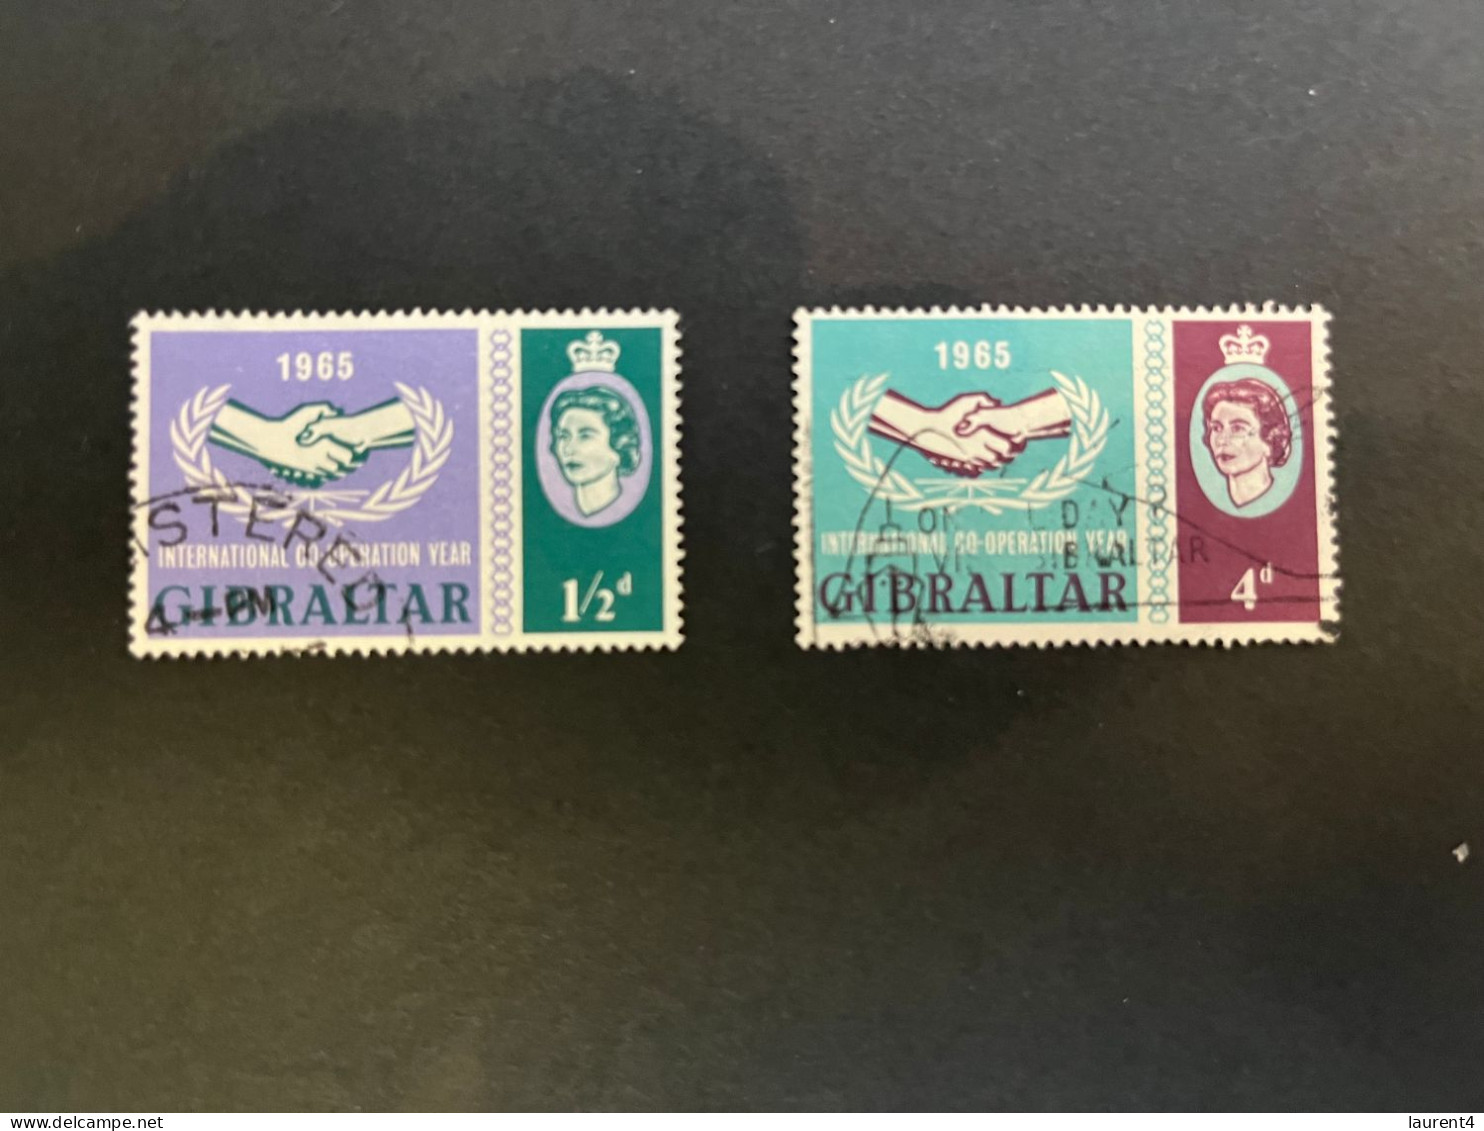 14-5-2024 (stamp) Obliterer  / Used - Co-operation Year 1965 - Gibraltar (2 Values) - Gibilterra